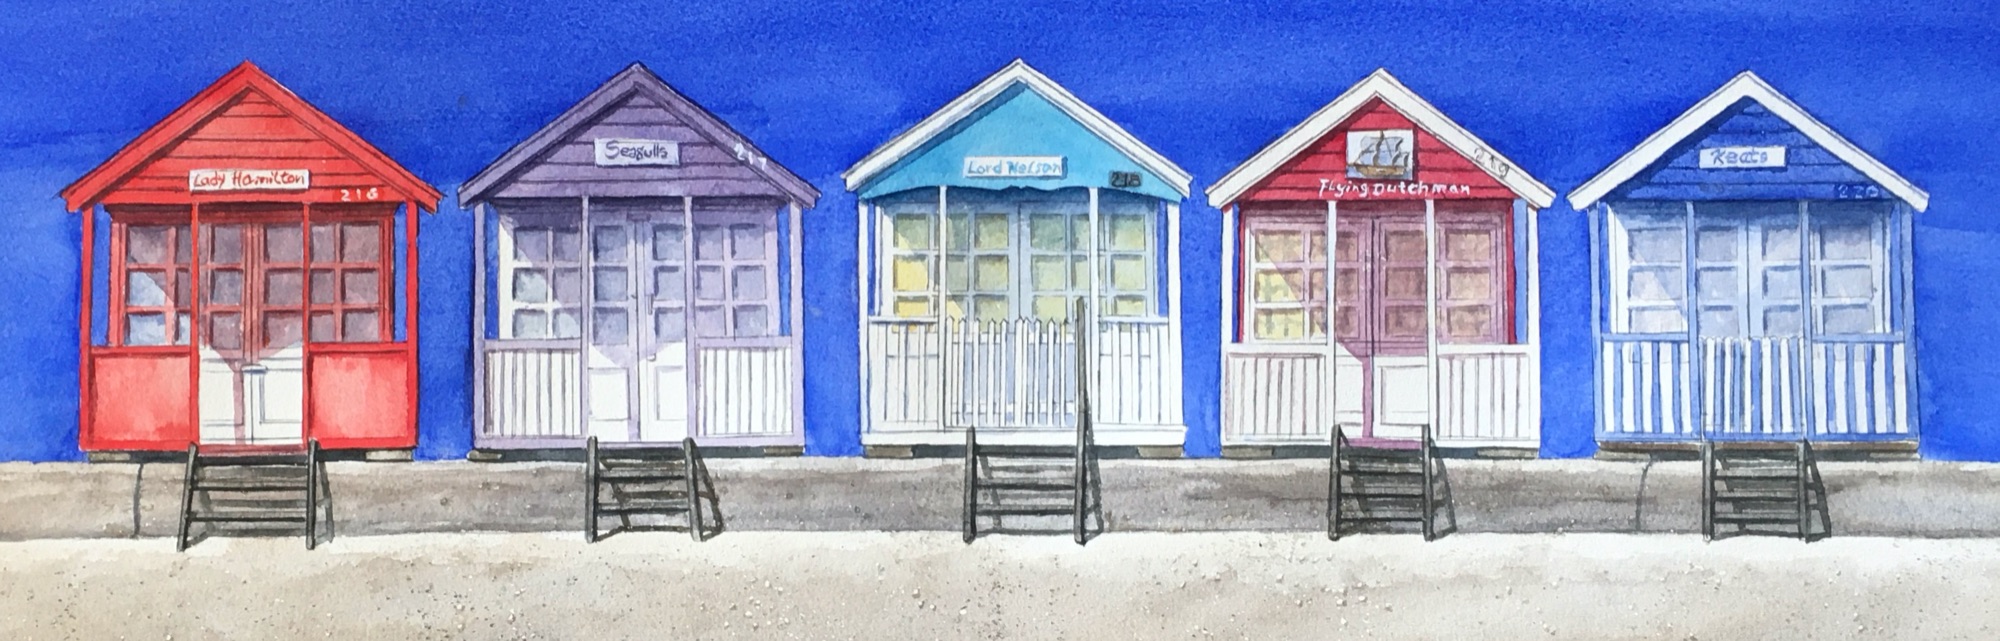 In Line Beach Huts by Rhodri Jones